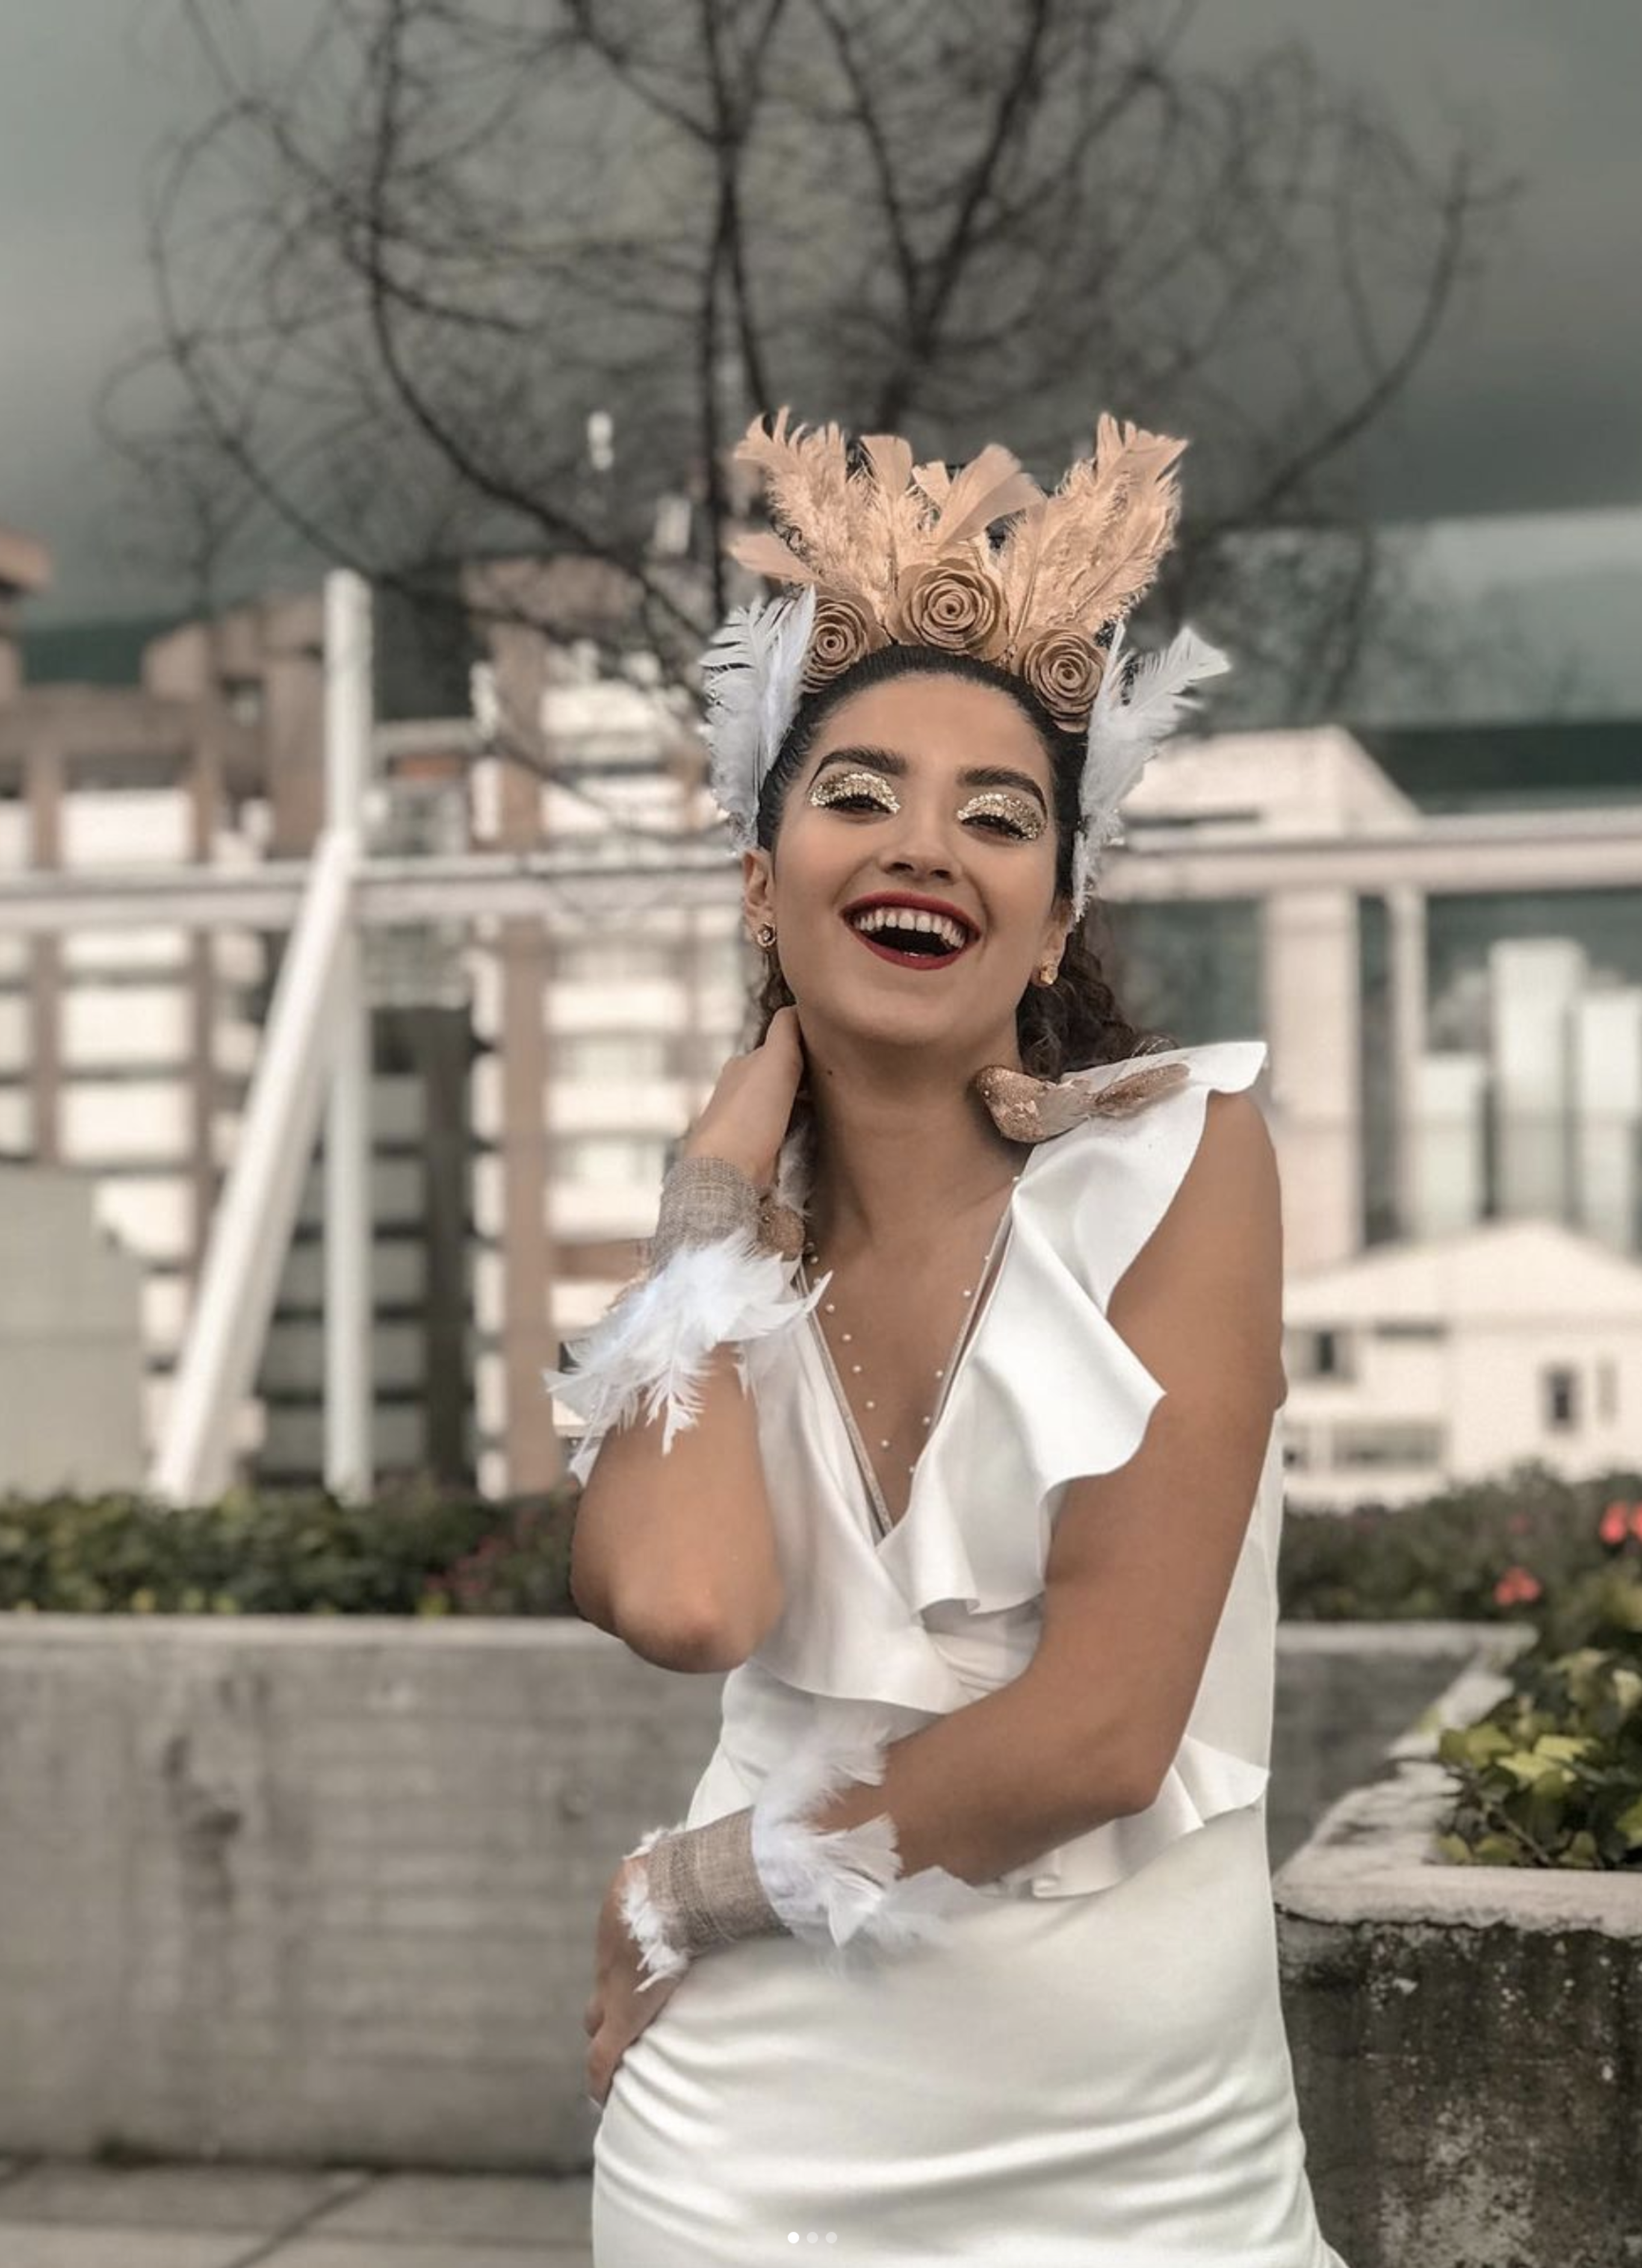 Una mujer con una sonrisa radiante, vestida con un vestido blanco y un tocado creativo con plumas y rosas, irradia alegría contra un telón de fondo urbano.